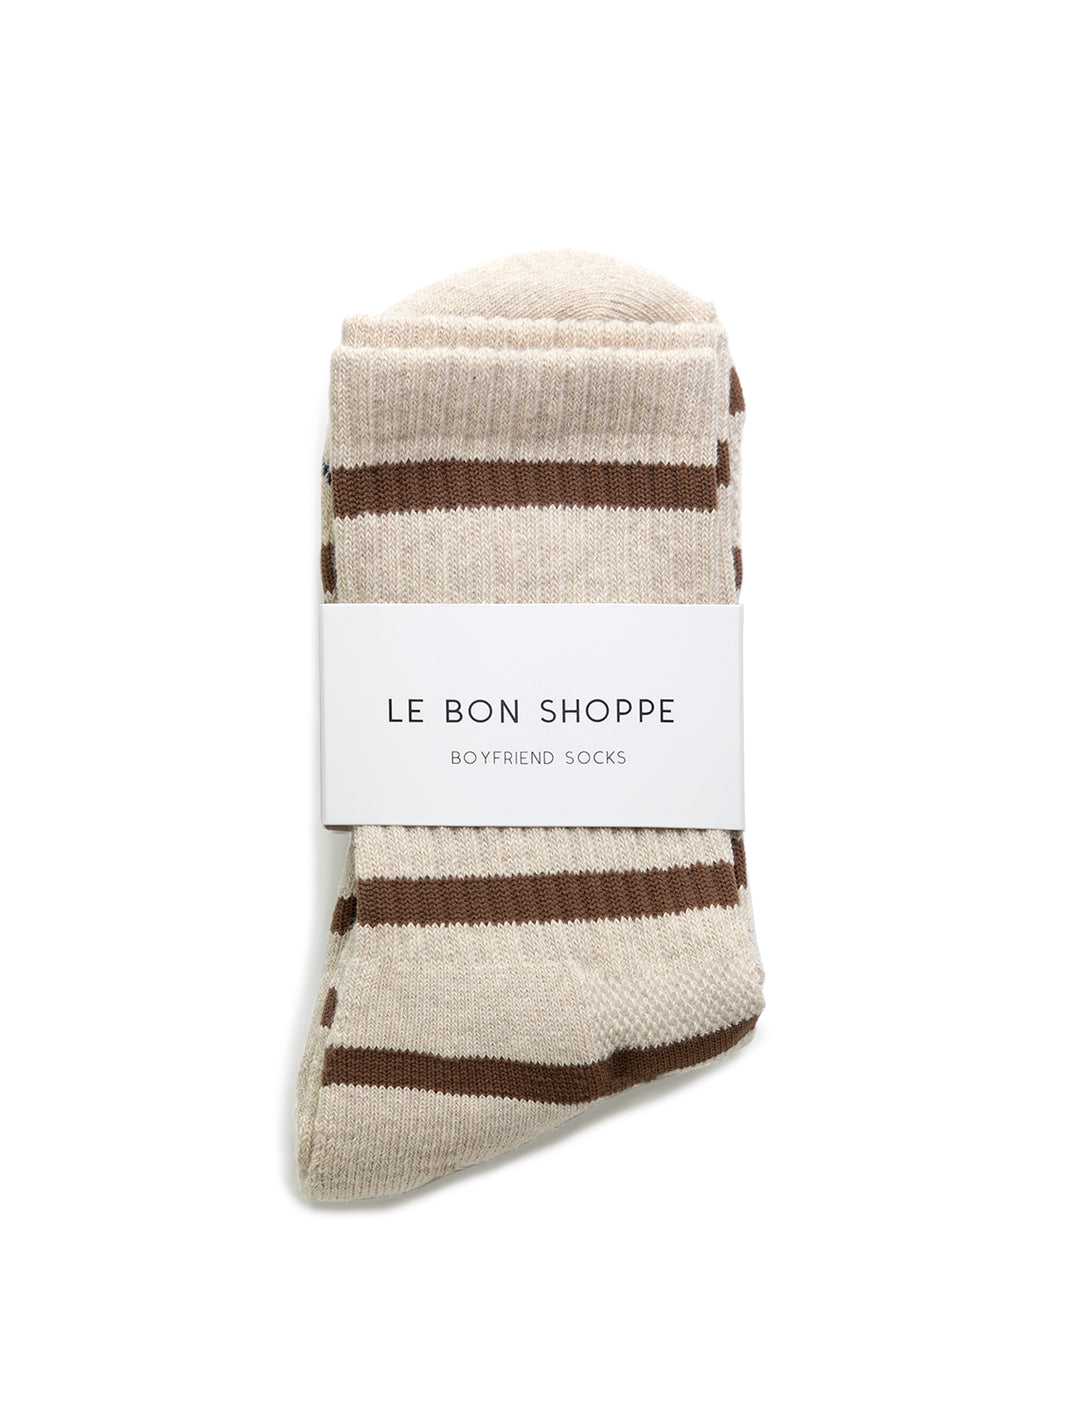 Le Bon Shoppe's striped boyfriend socks in flax stripe.